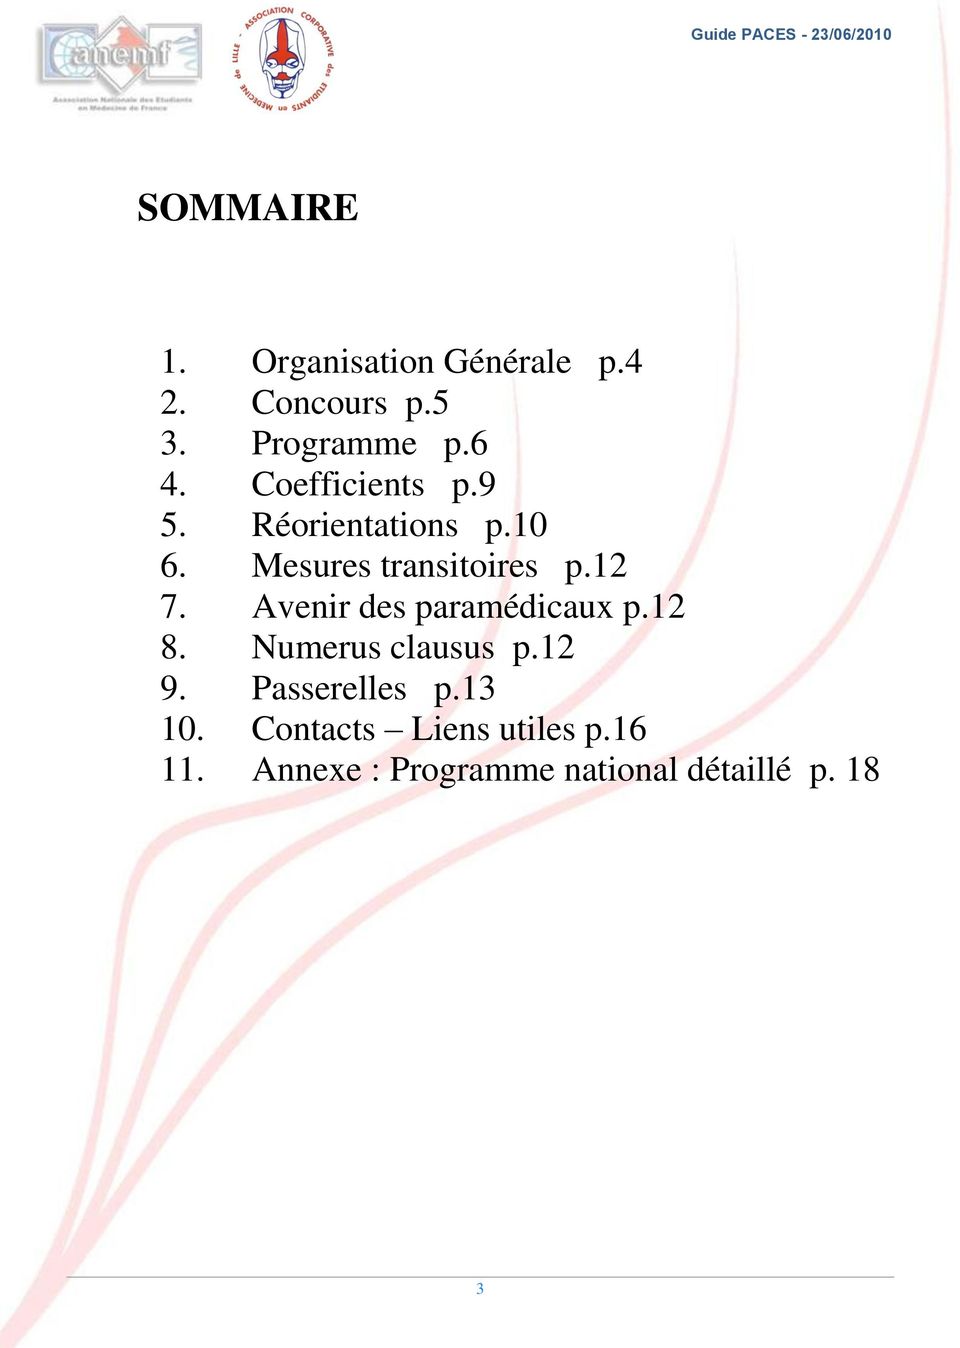 Avenir des paramédicaux p.12 8. Numerus clausus p.12 9. Passerelles p.